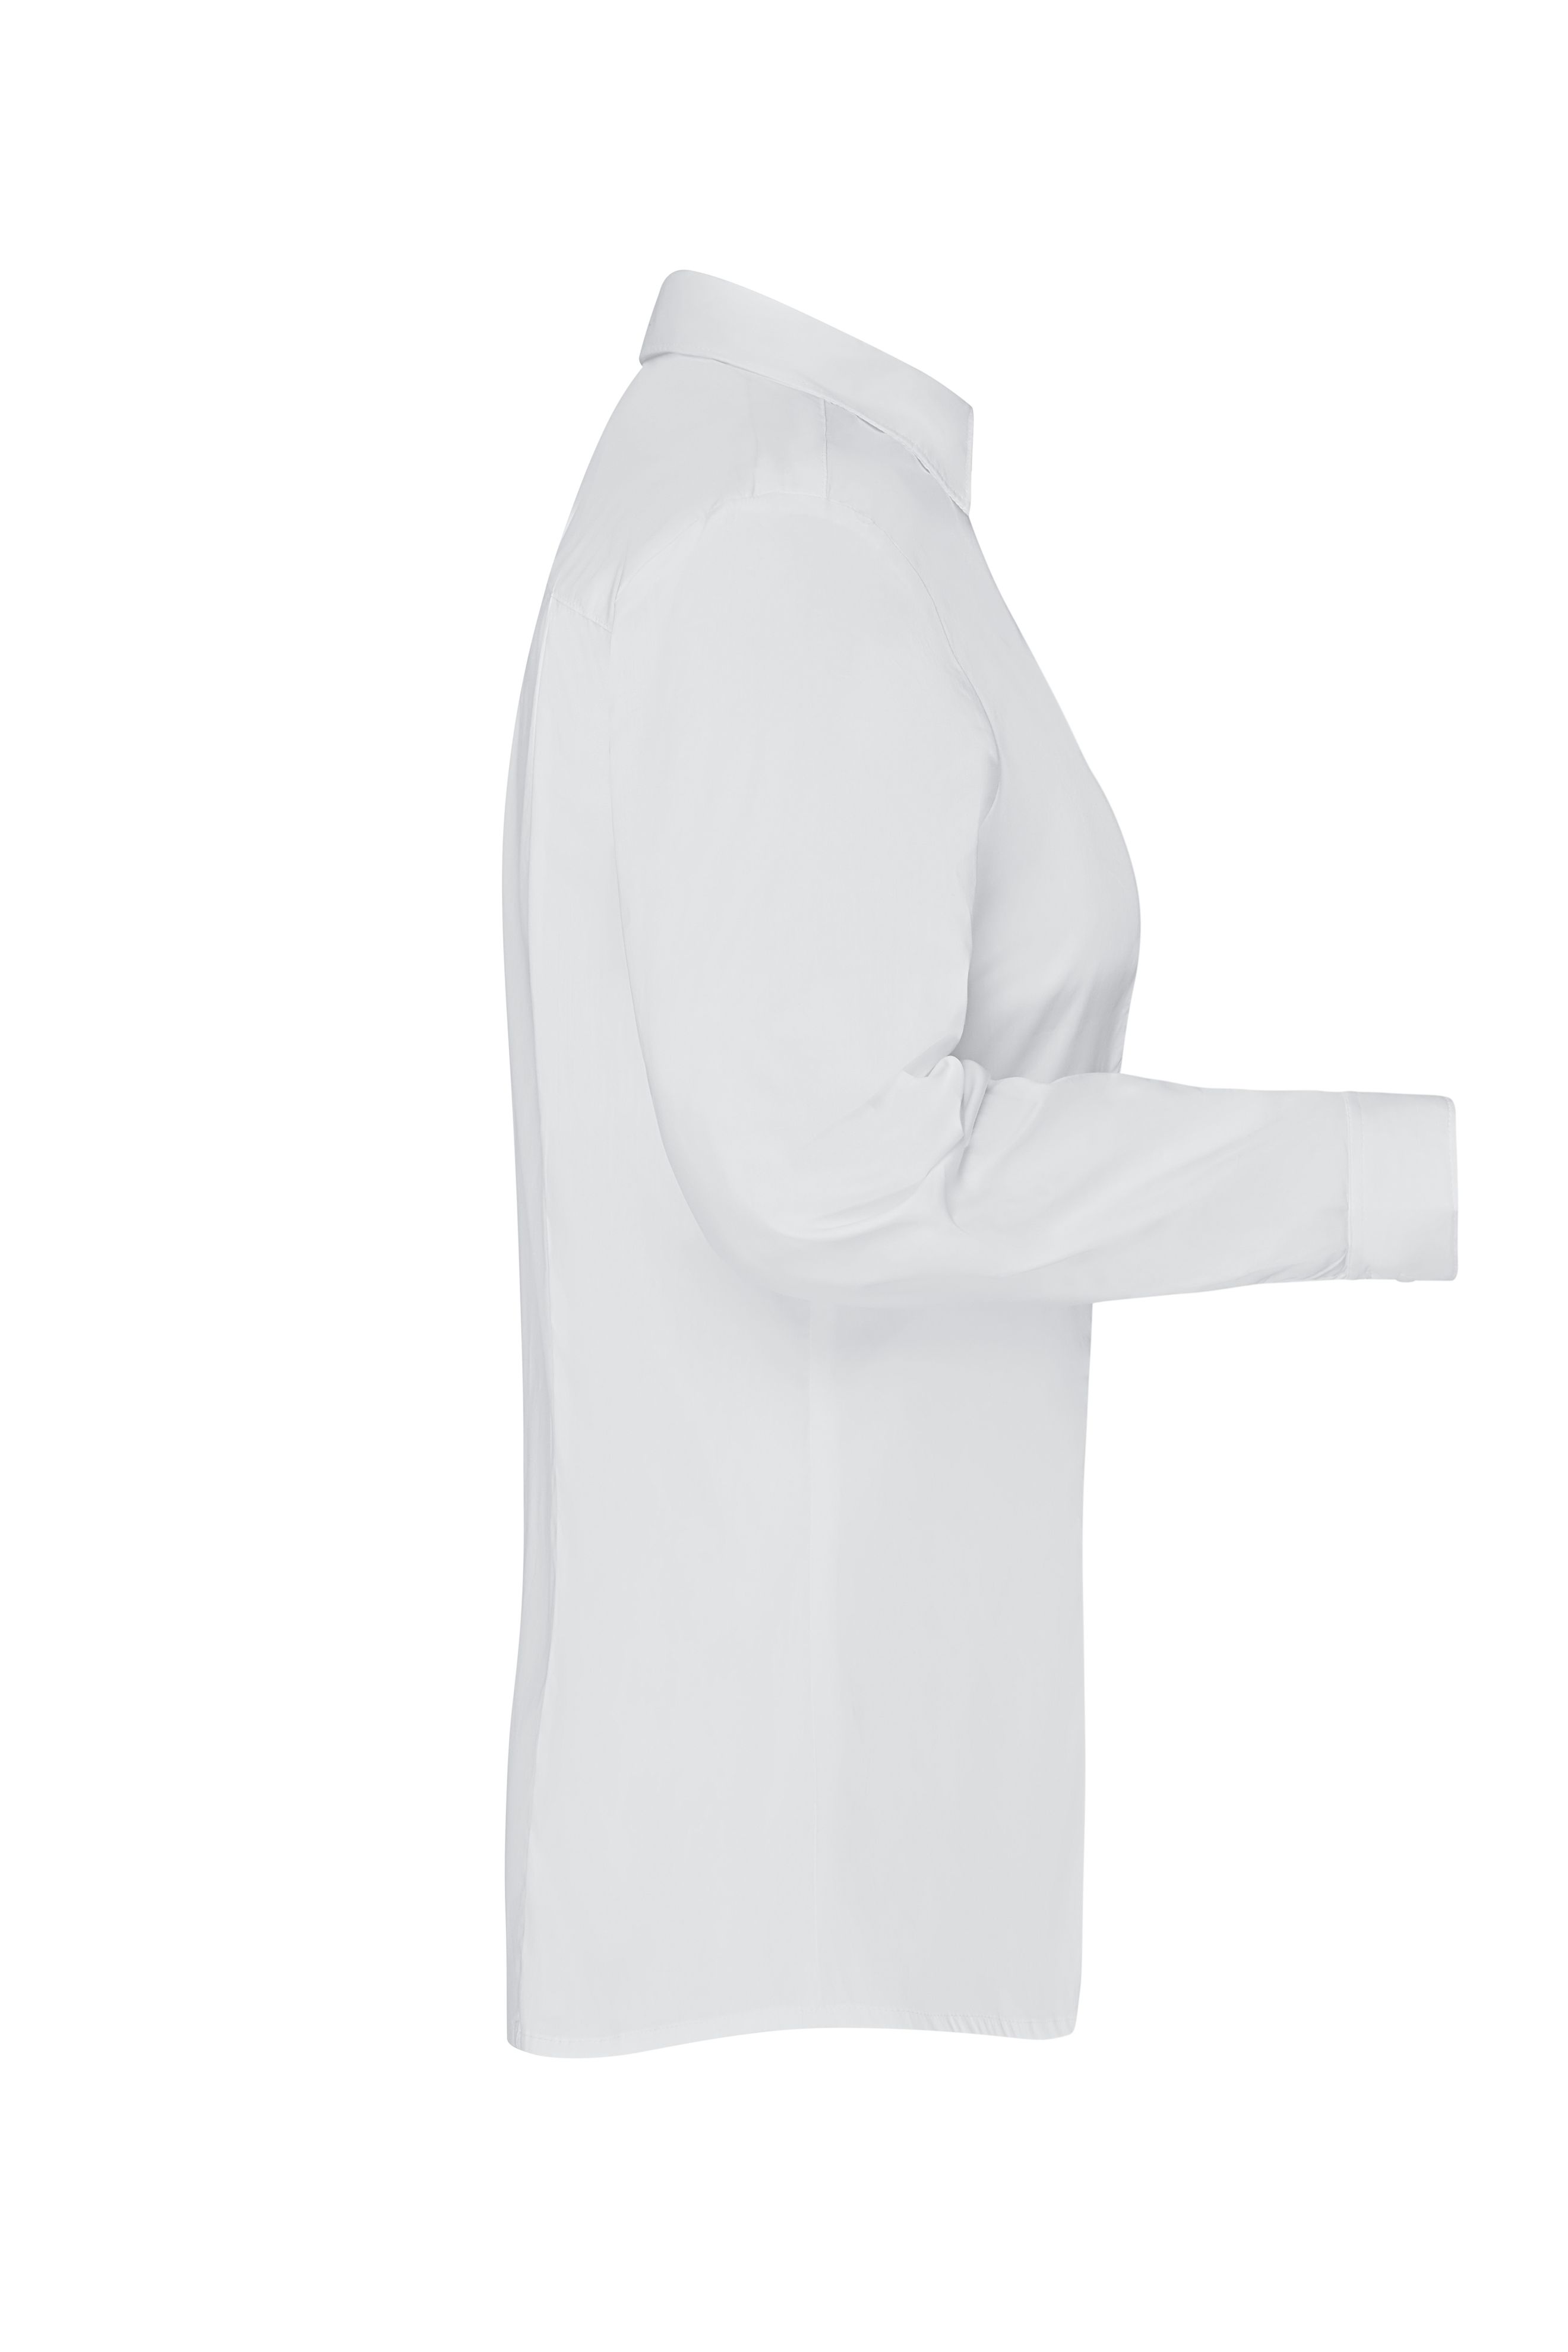 Ladies`Shirt Slim Fit JN645 Modisch tailliertes Cityhemd und Damenbluse